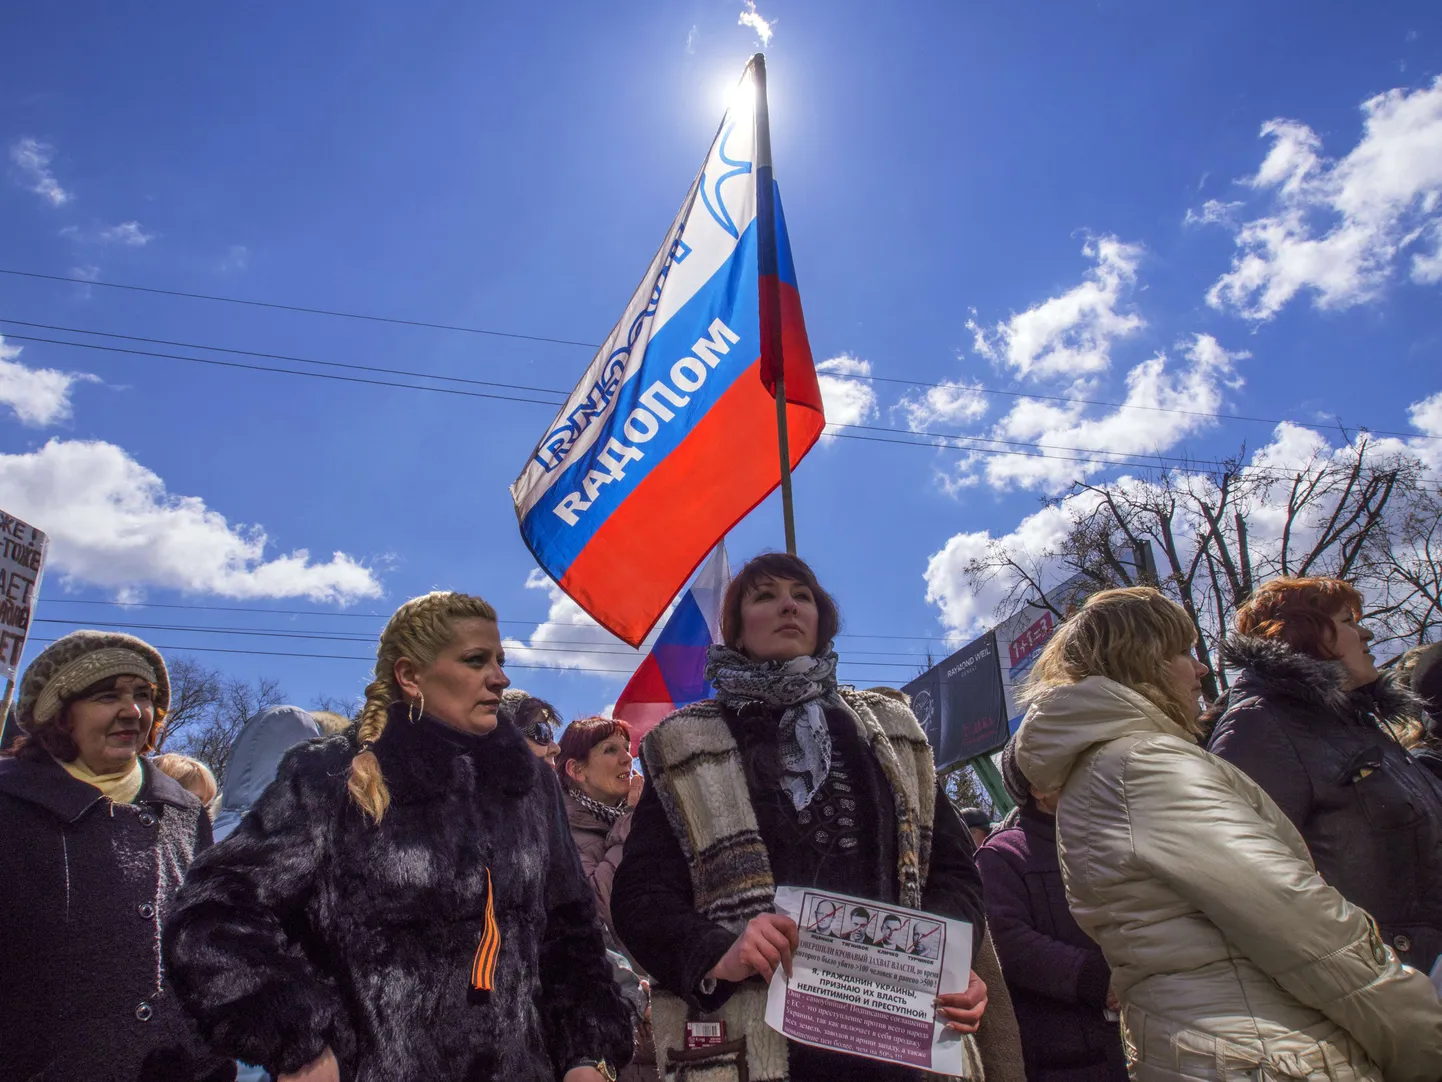 Venemeelsed separatistid on alates pühapäevast hõivanud oblastivalitsuste hooneid Donetskis, Luganskis ja Harkivis. Eesti venekeelsed ühiskonnategelased ja kodanikuaktivistid kinnitavad ühises avalduses, et mõistavad separatismi hukka.